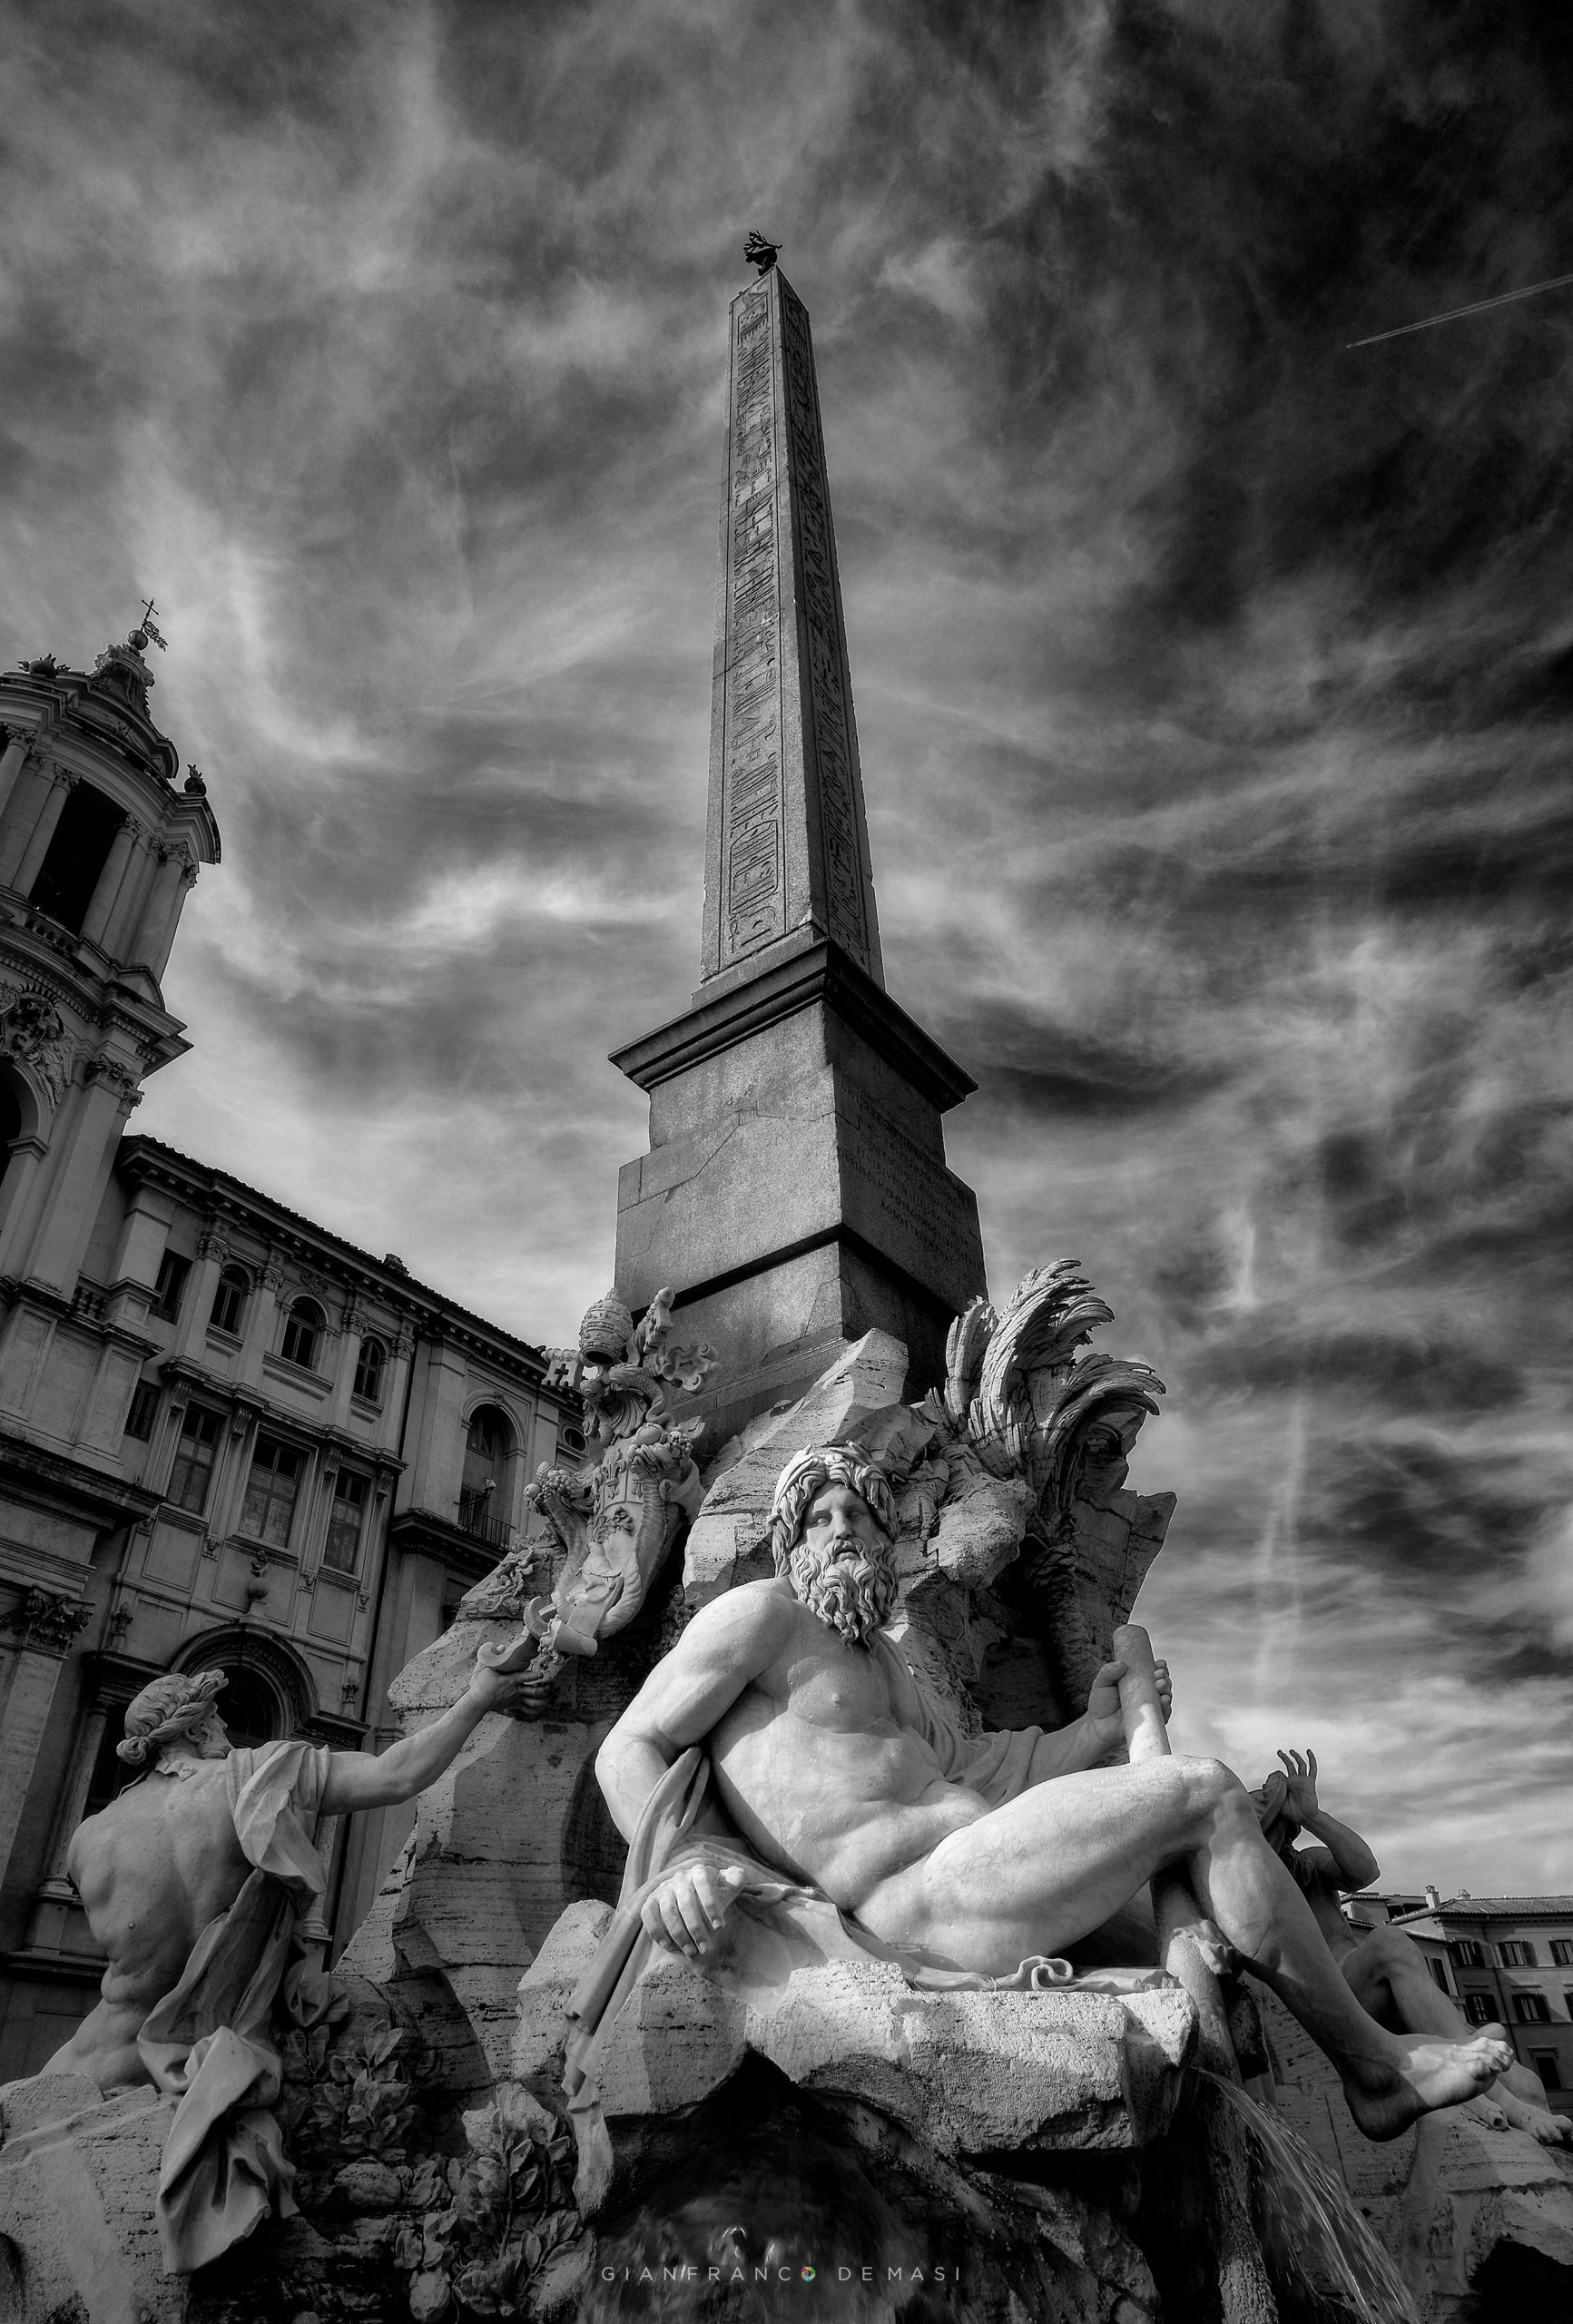 Roma, Piazza Navona